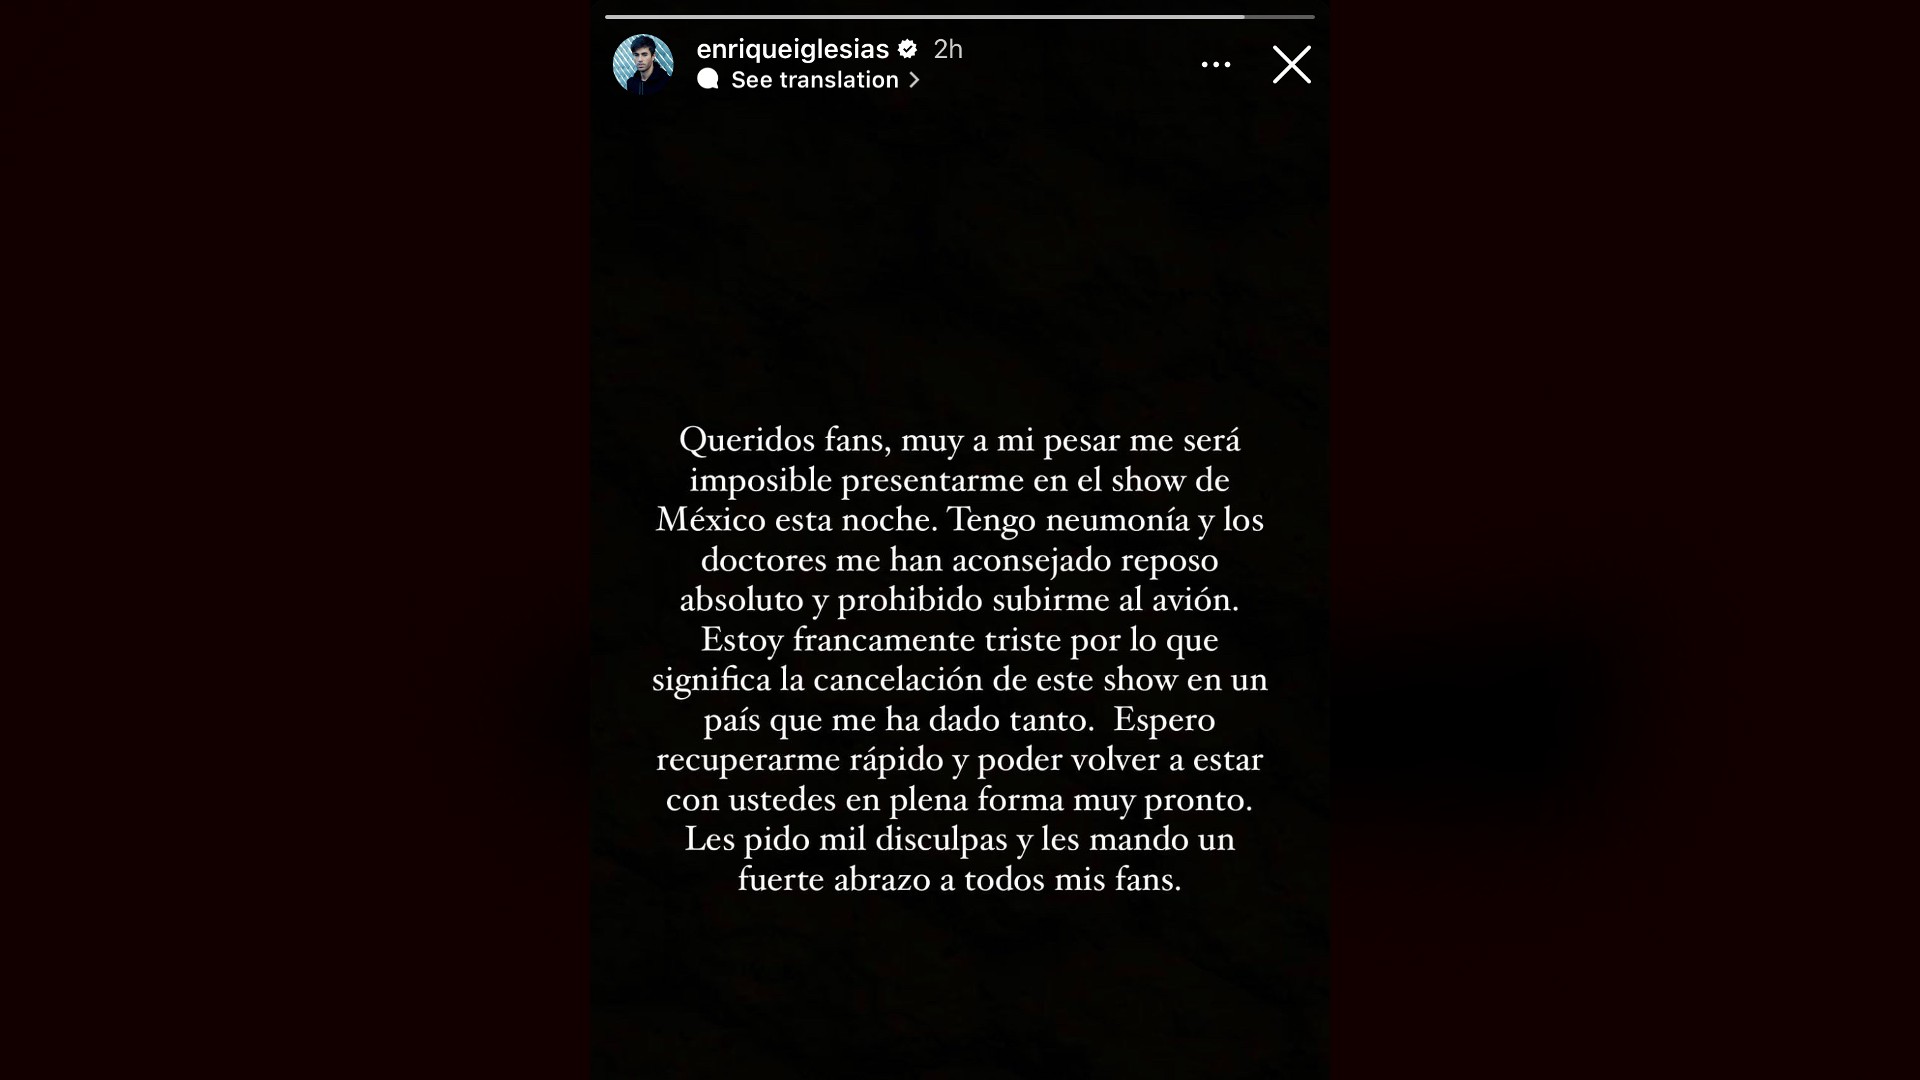 Enrique Iglesias cancela presentación en Tecate Emblema. El cantante explicó los motivos en sus redes sociales. Imagen: @enriqueiglesias.